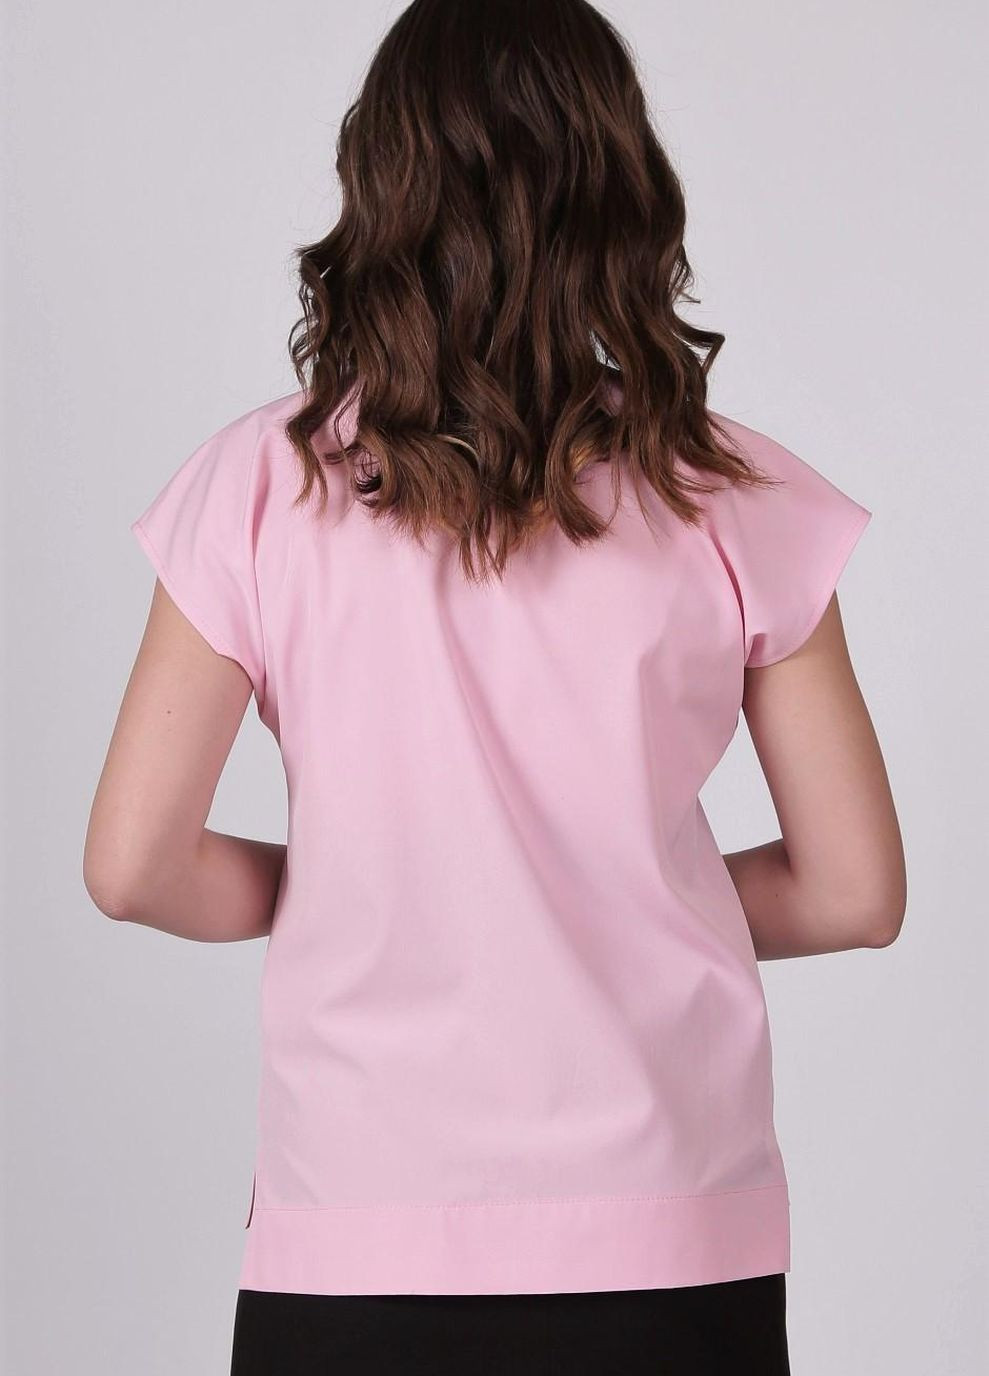 Розовая блузка женская 0071 однотонный софт розовая Актуаль